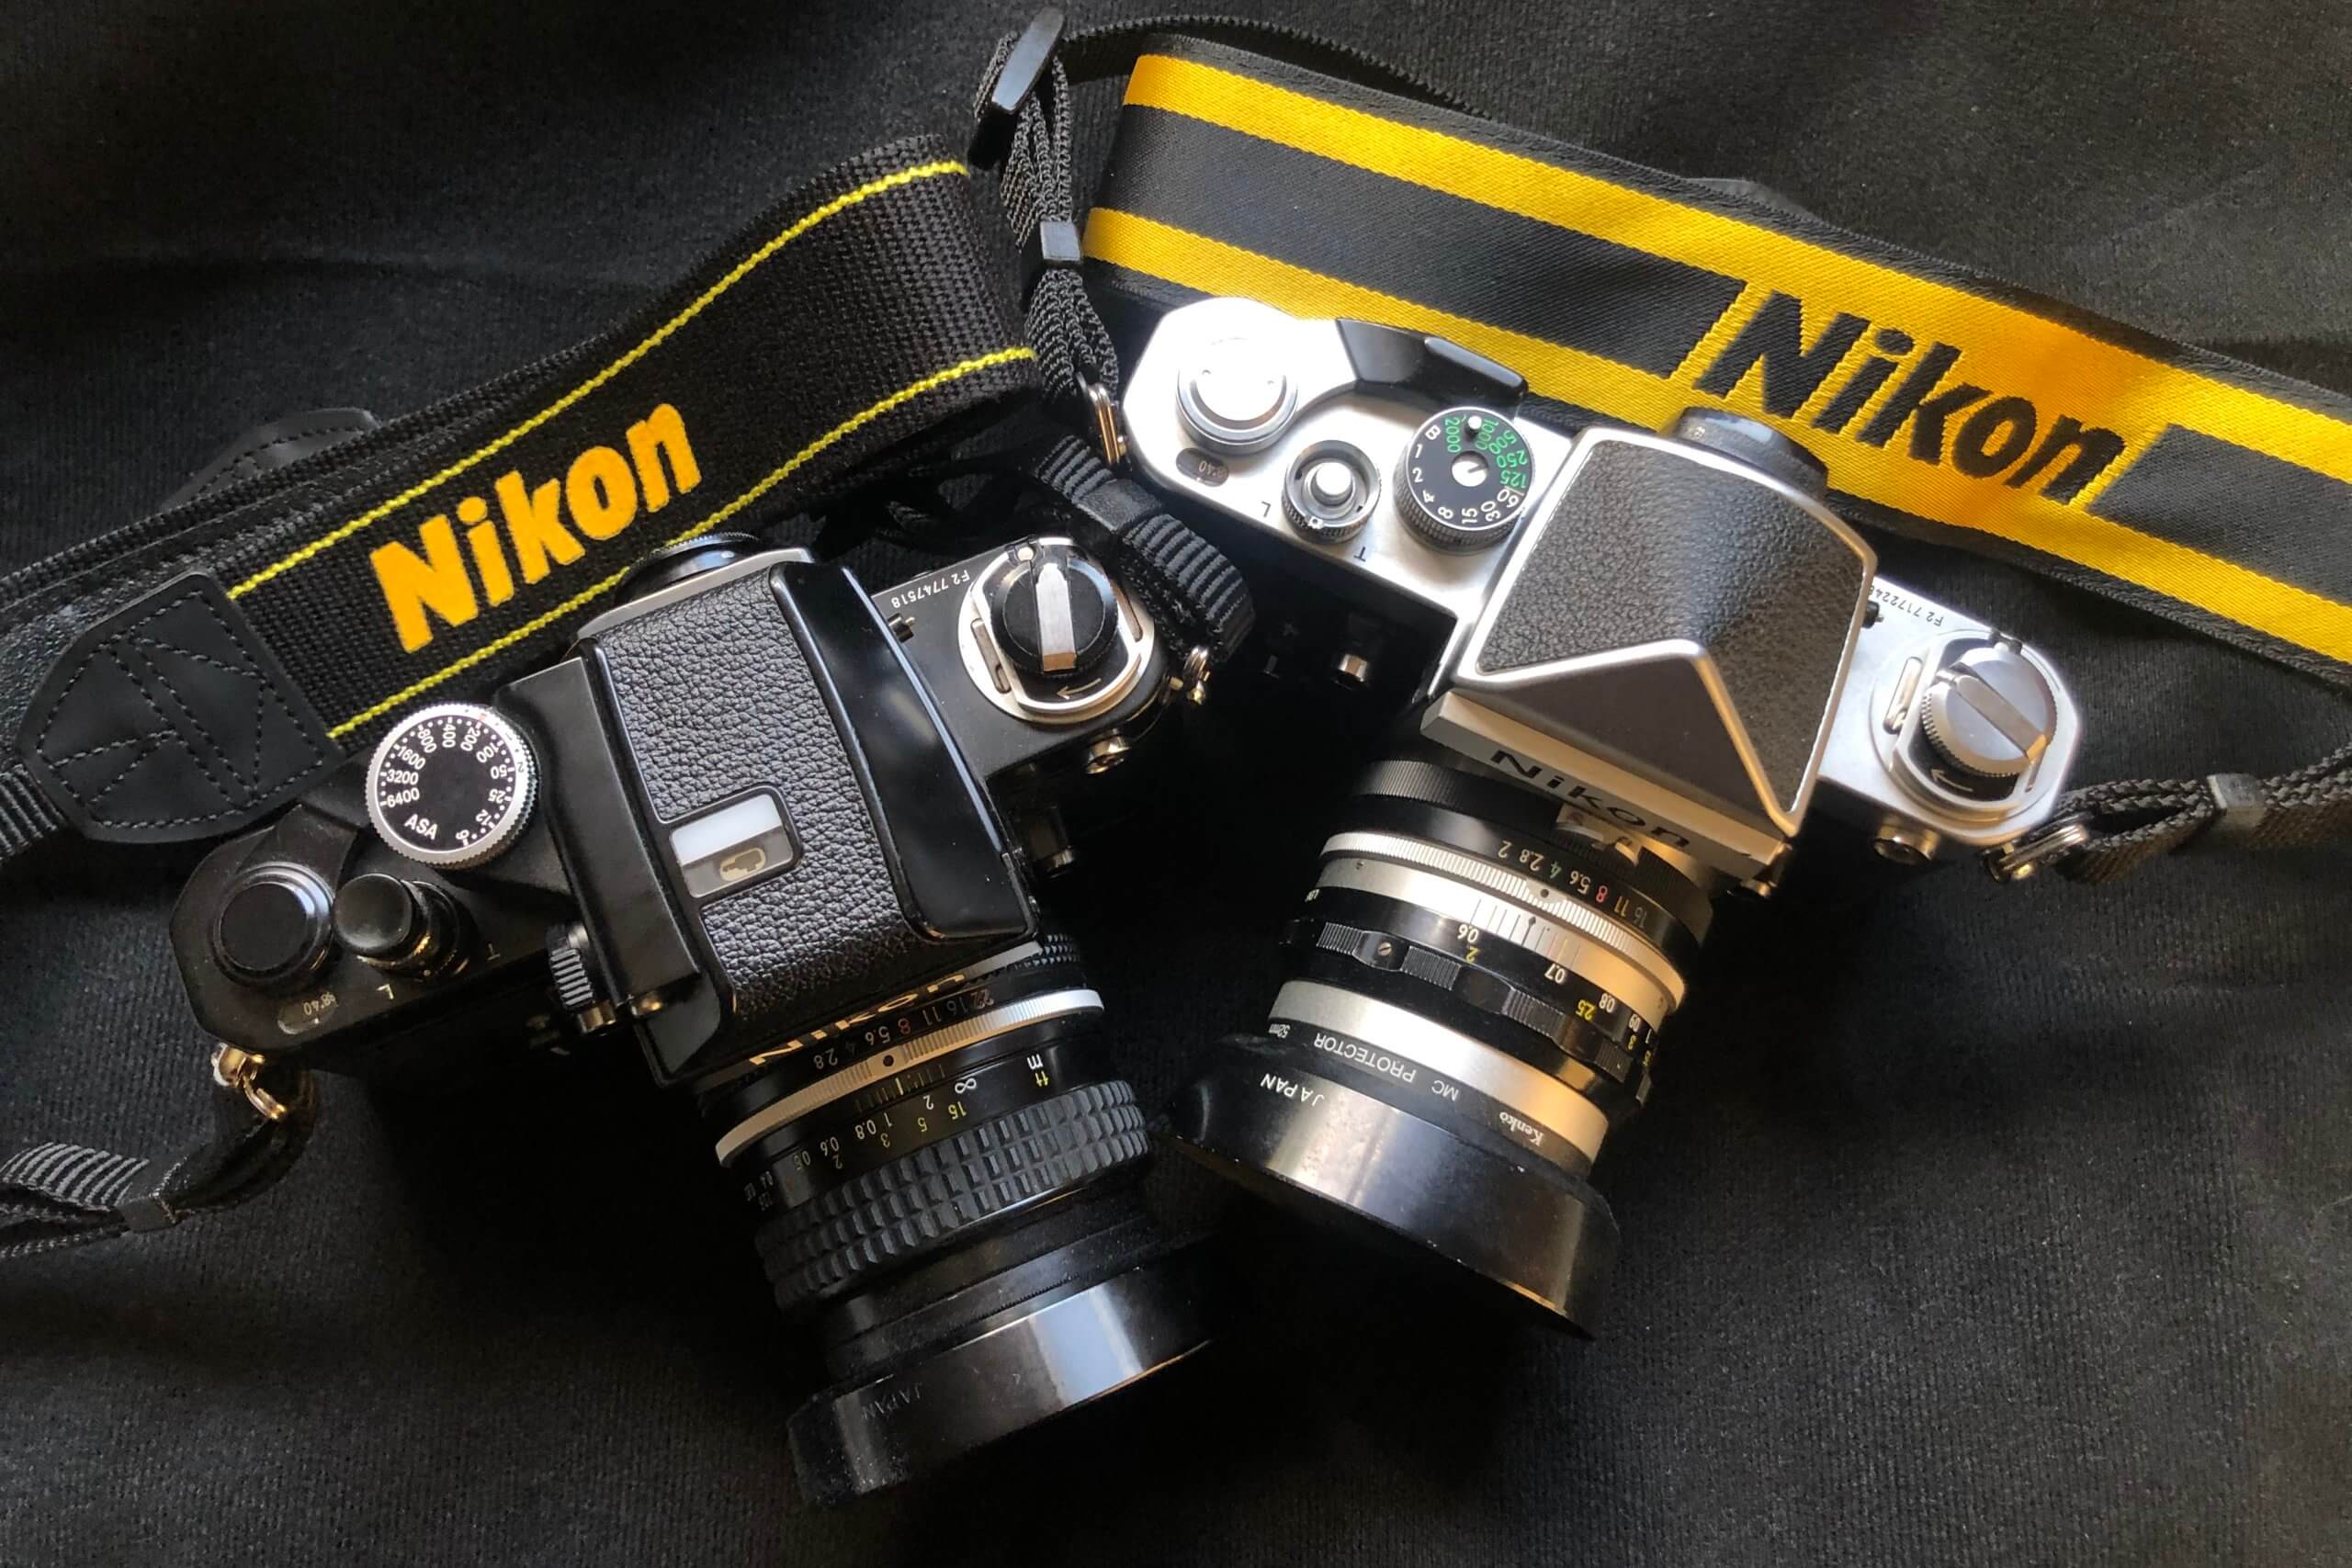 ニコン機だけは「Nikon」とブランド名の入ったストラップをつけるのは 